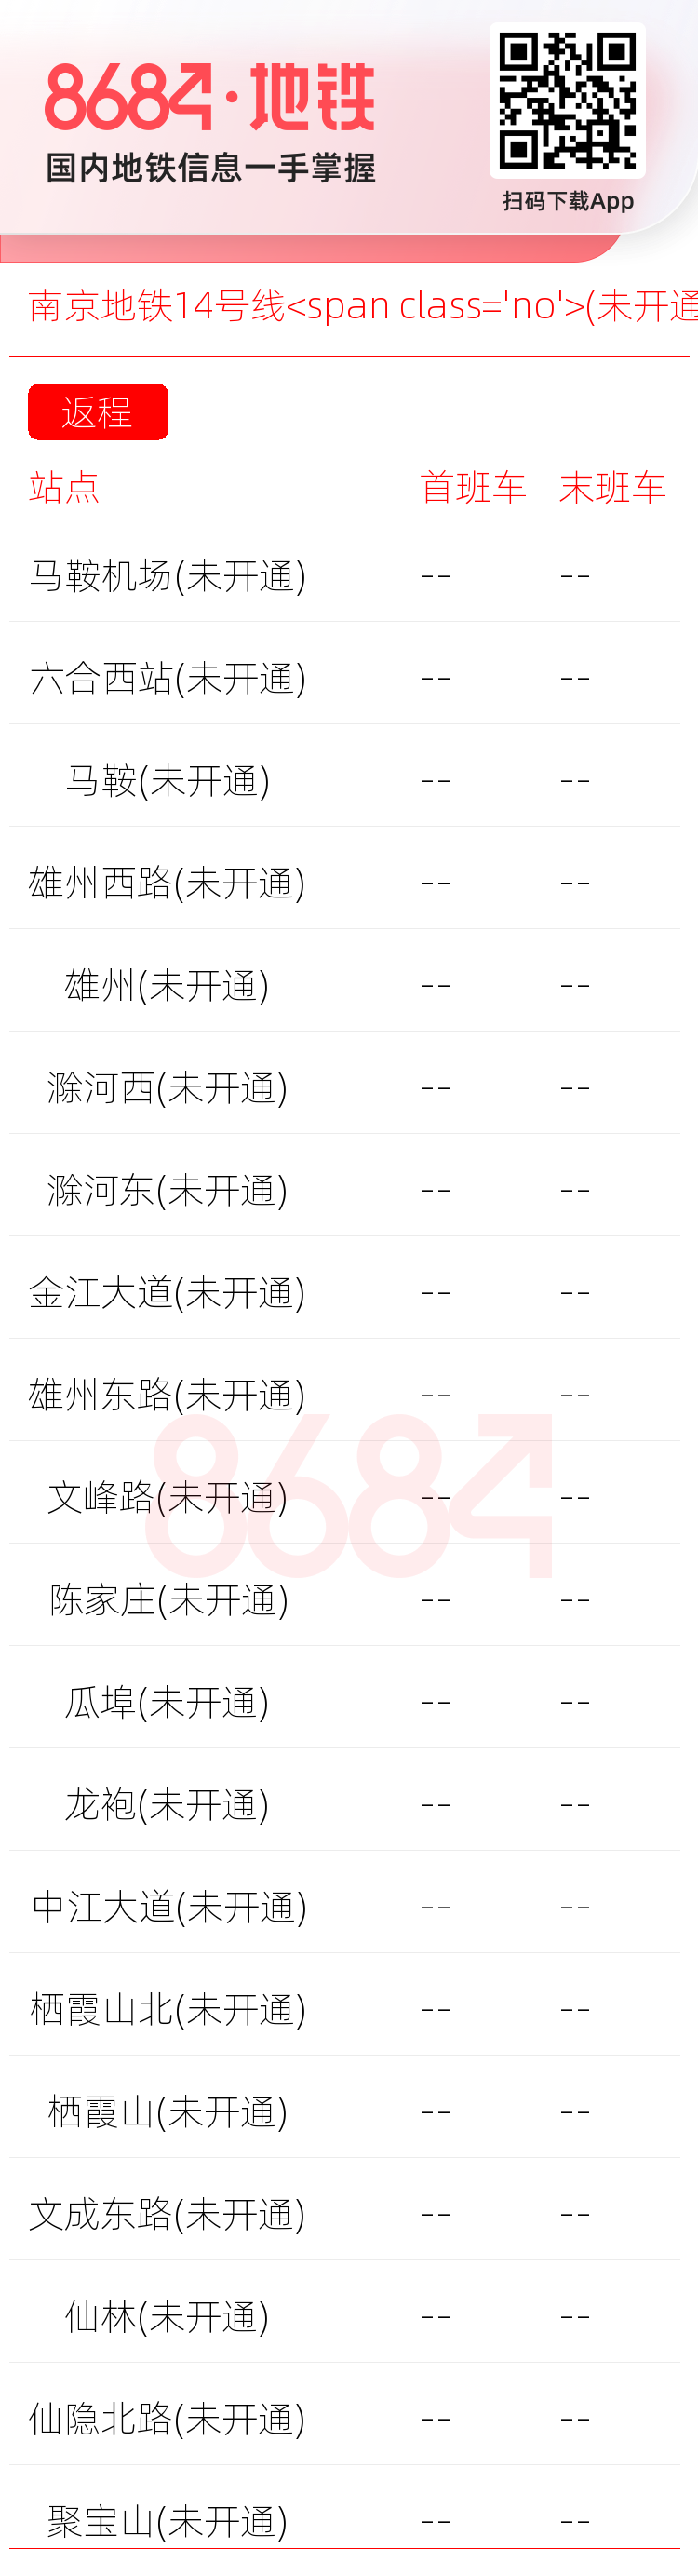 南京地铁14号线<span class='no'>(未开通)</span>运营时间表